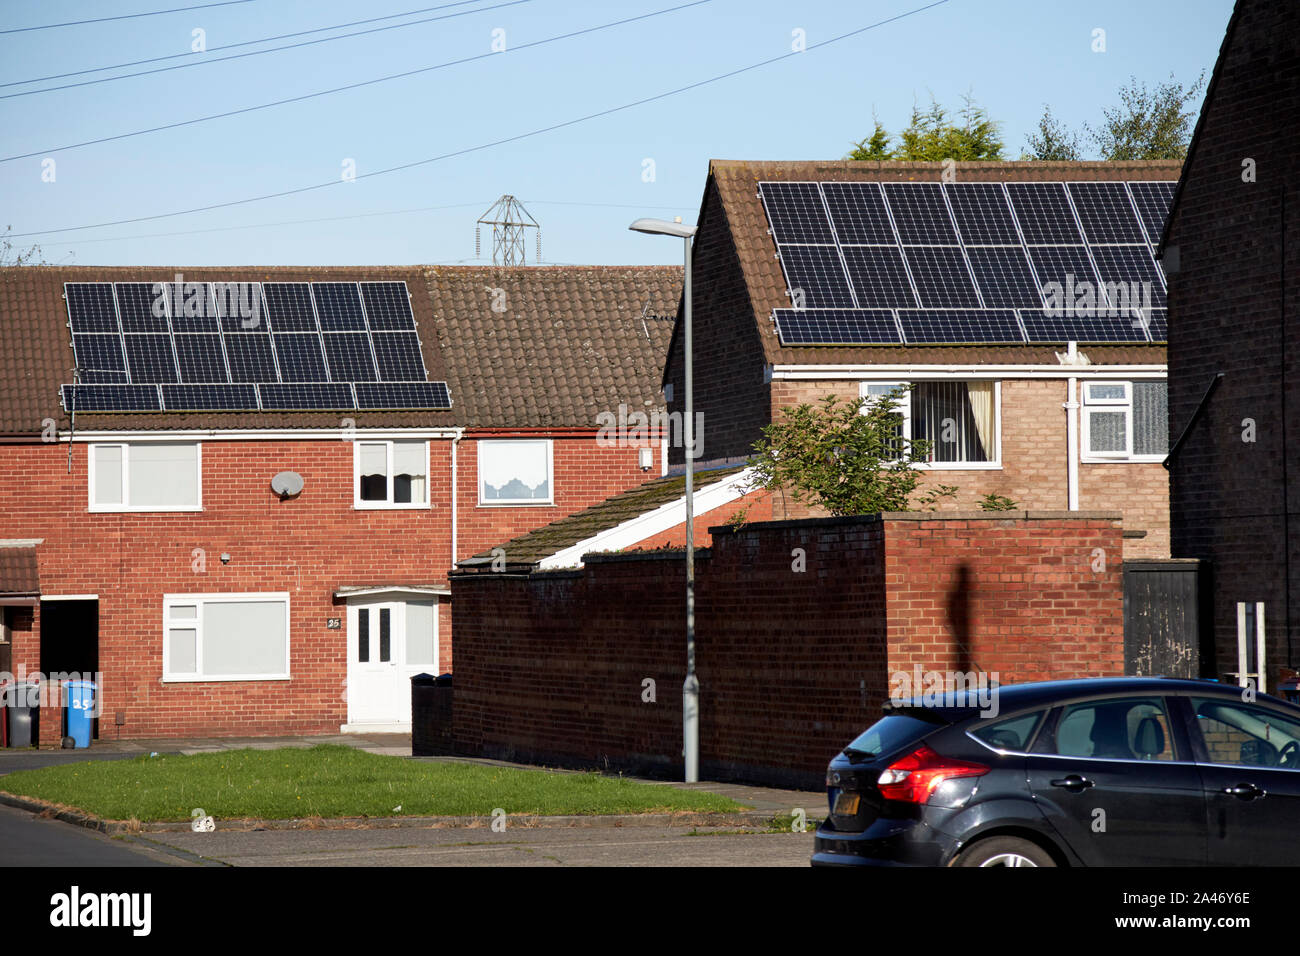 Paneles solares en tejados de casas hacia el sur en una calle de Liverpool, Inglaterra Foto de stock